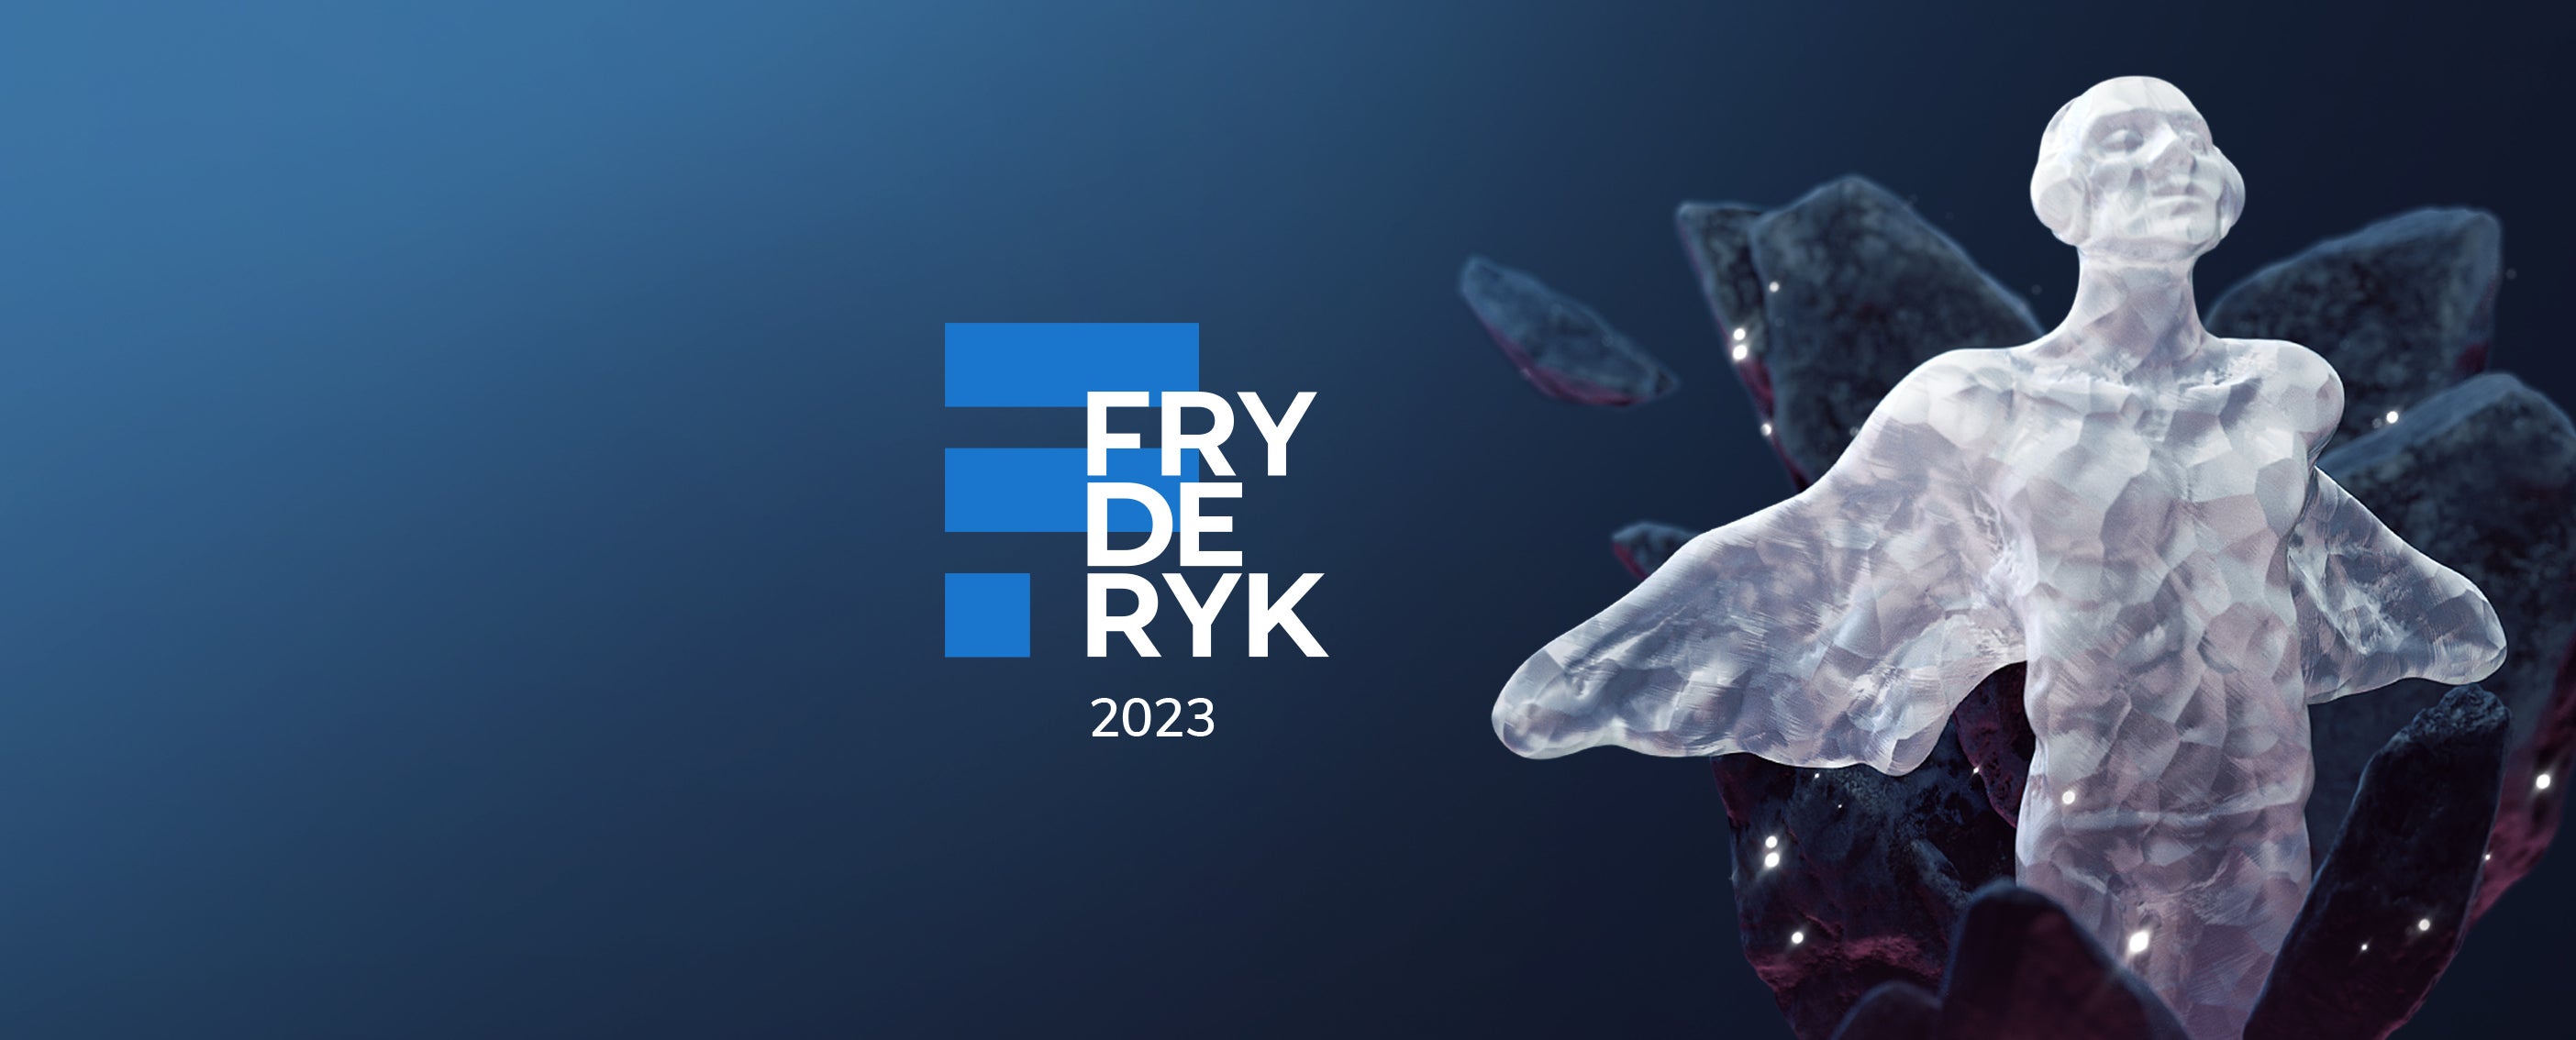 Fryderyk Festiwal presale information on freepresalepasswords.com